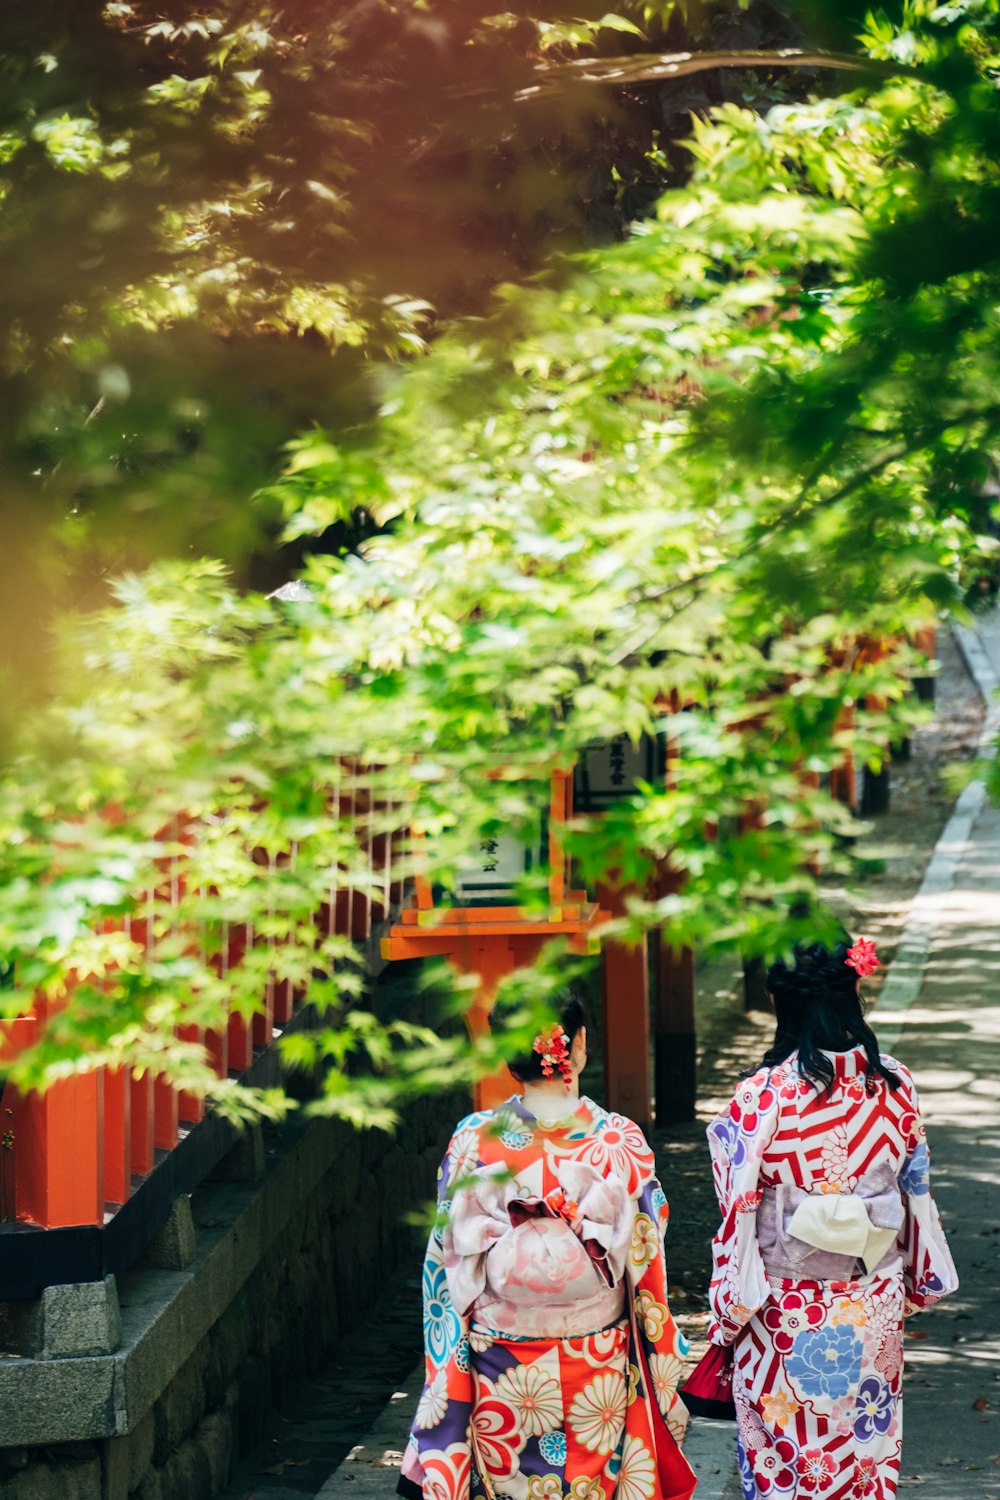 deux geishas marchant sur une passerelle en béton